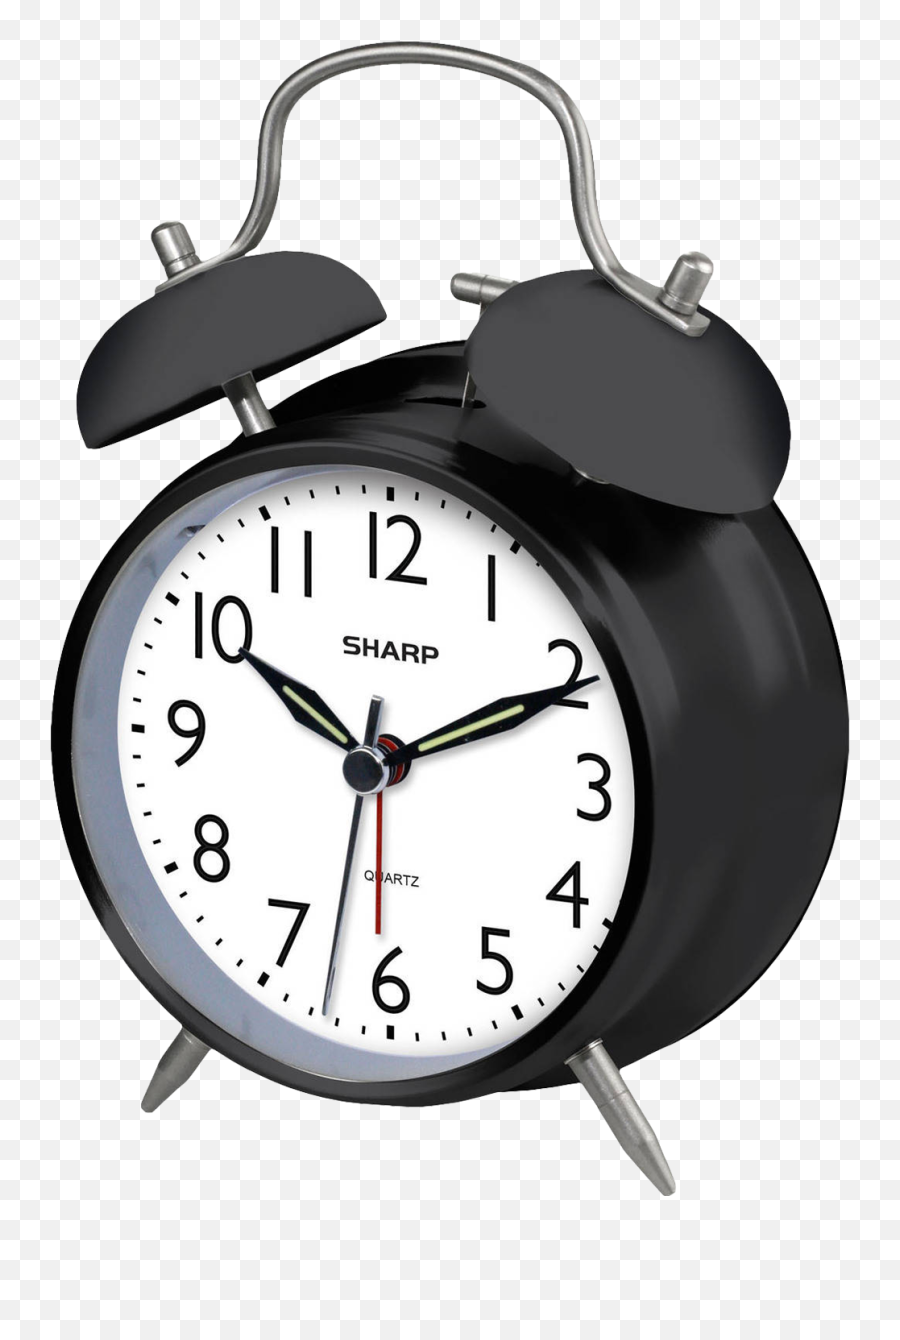 Alarm Clock Png Image - Transparent Background Alarm Clock Png,Clocks Png